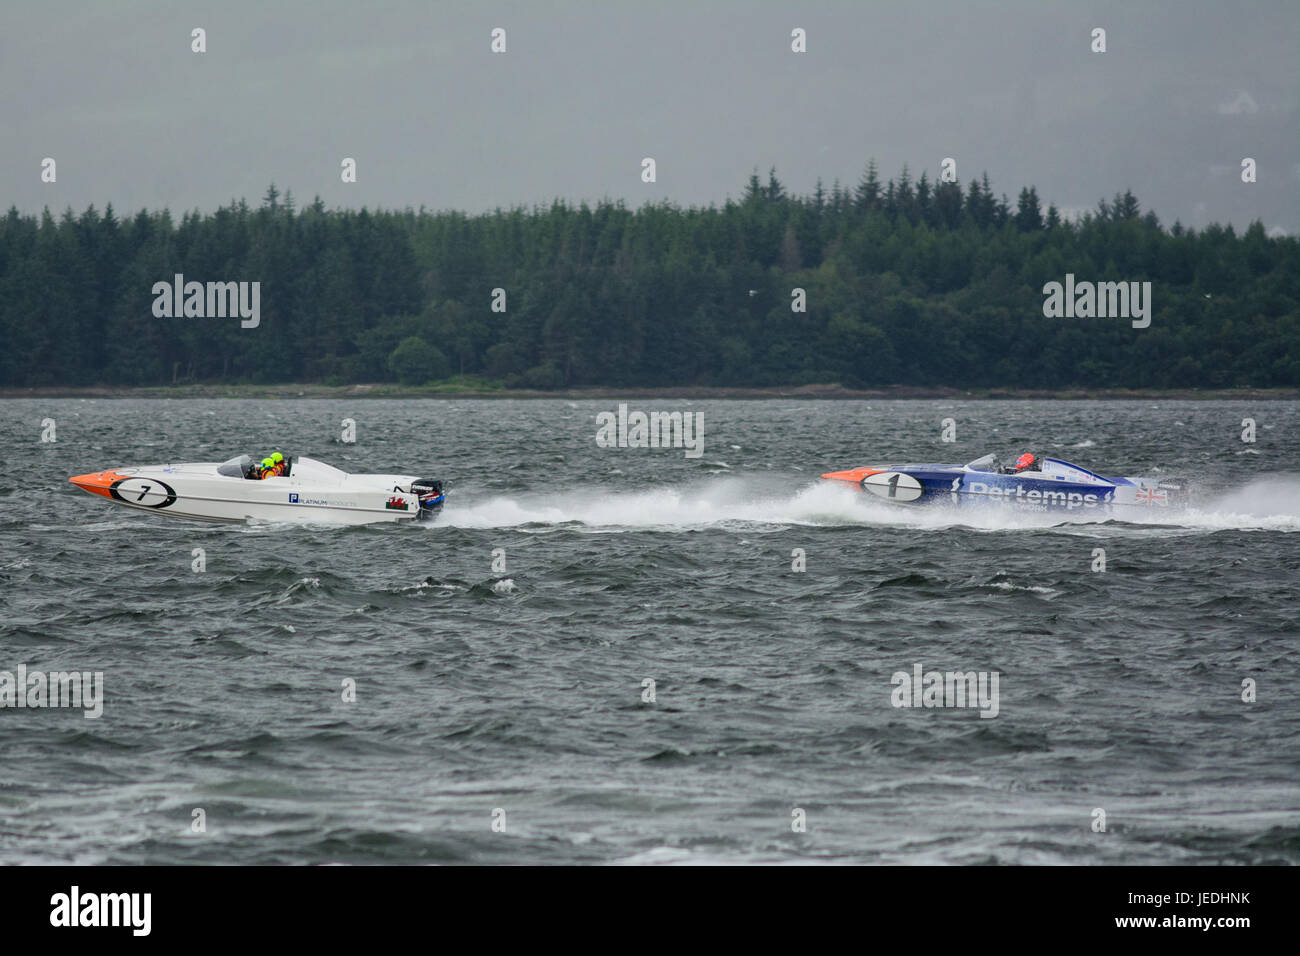 P1 Superstock Powerboat Racing von der Esplanade, Greenock, Schottland, 24. Juni 2017.  Schiff 01, Pertemps, verfolgt 07 Platinum Produkte. Stockfoto